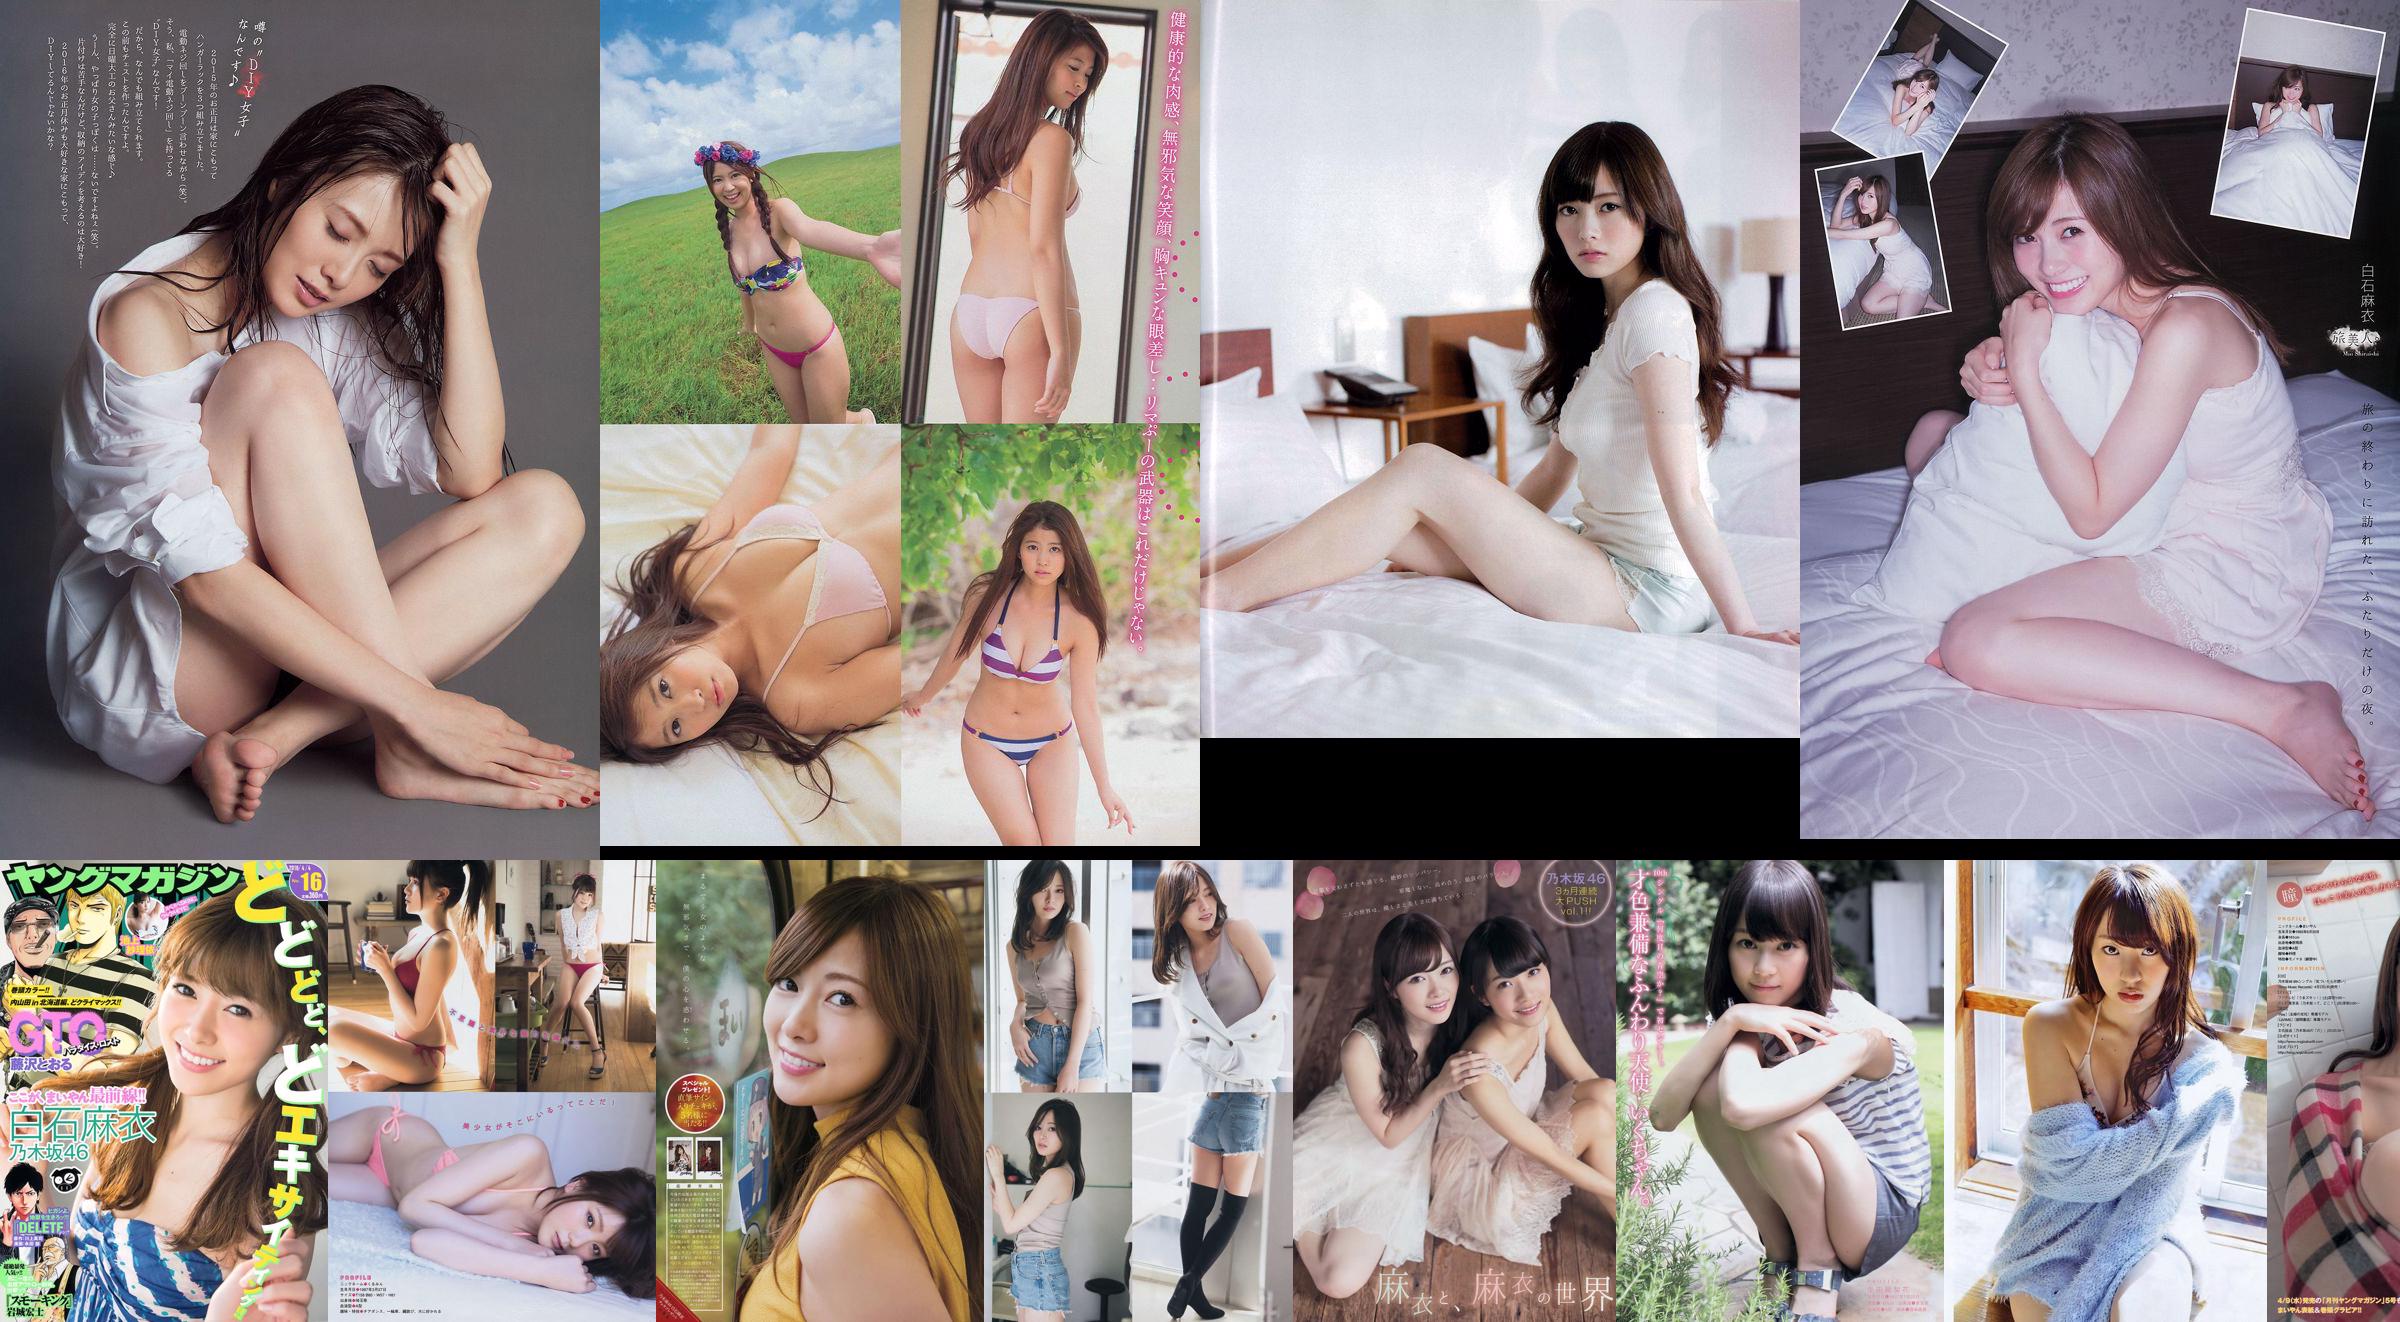 [EX Taishu] Shiraishi Mai, Nishino Nanase, Kodama Haruka, Owada Nanna 2014 No.11 Photo Magazine No.45c583 Trang 3